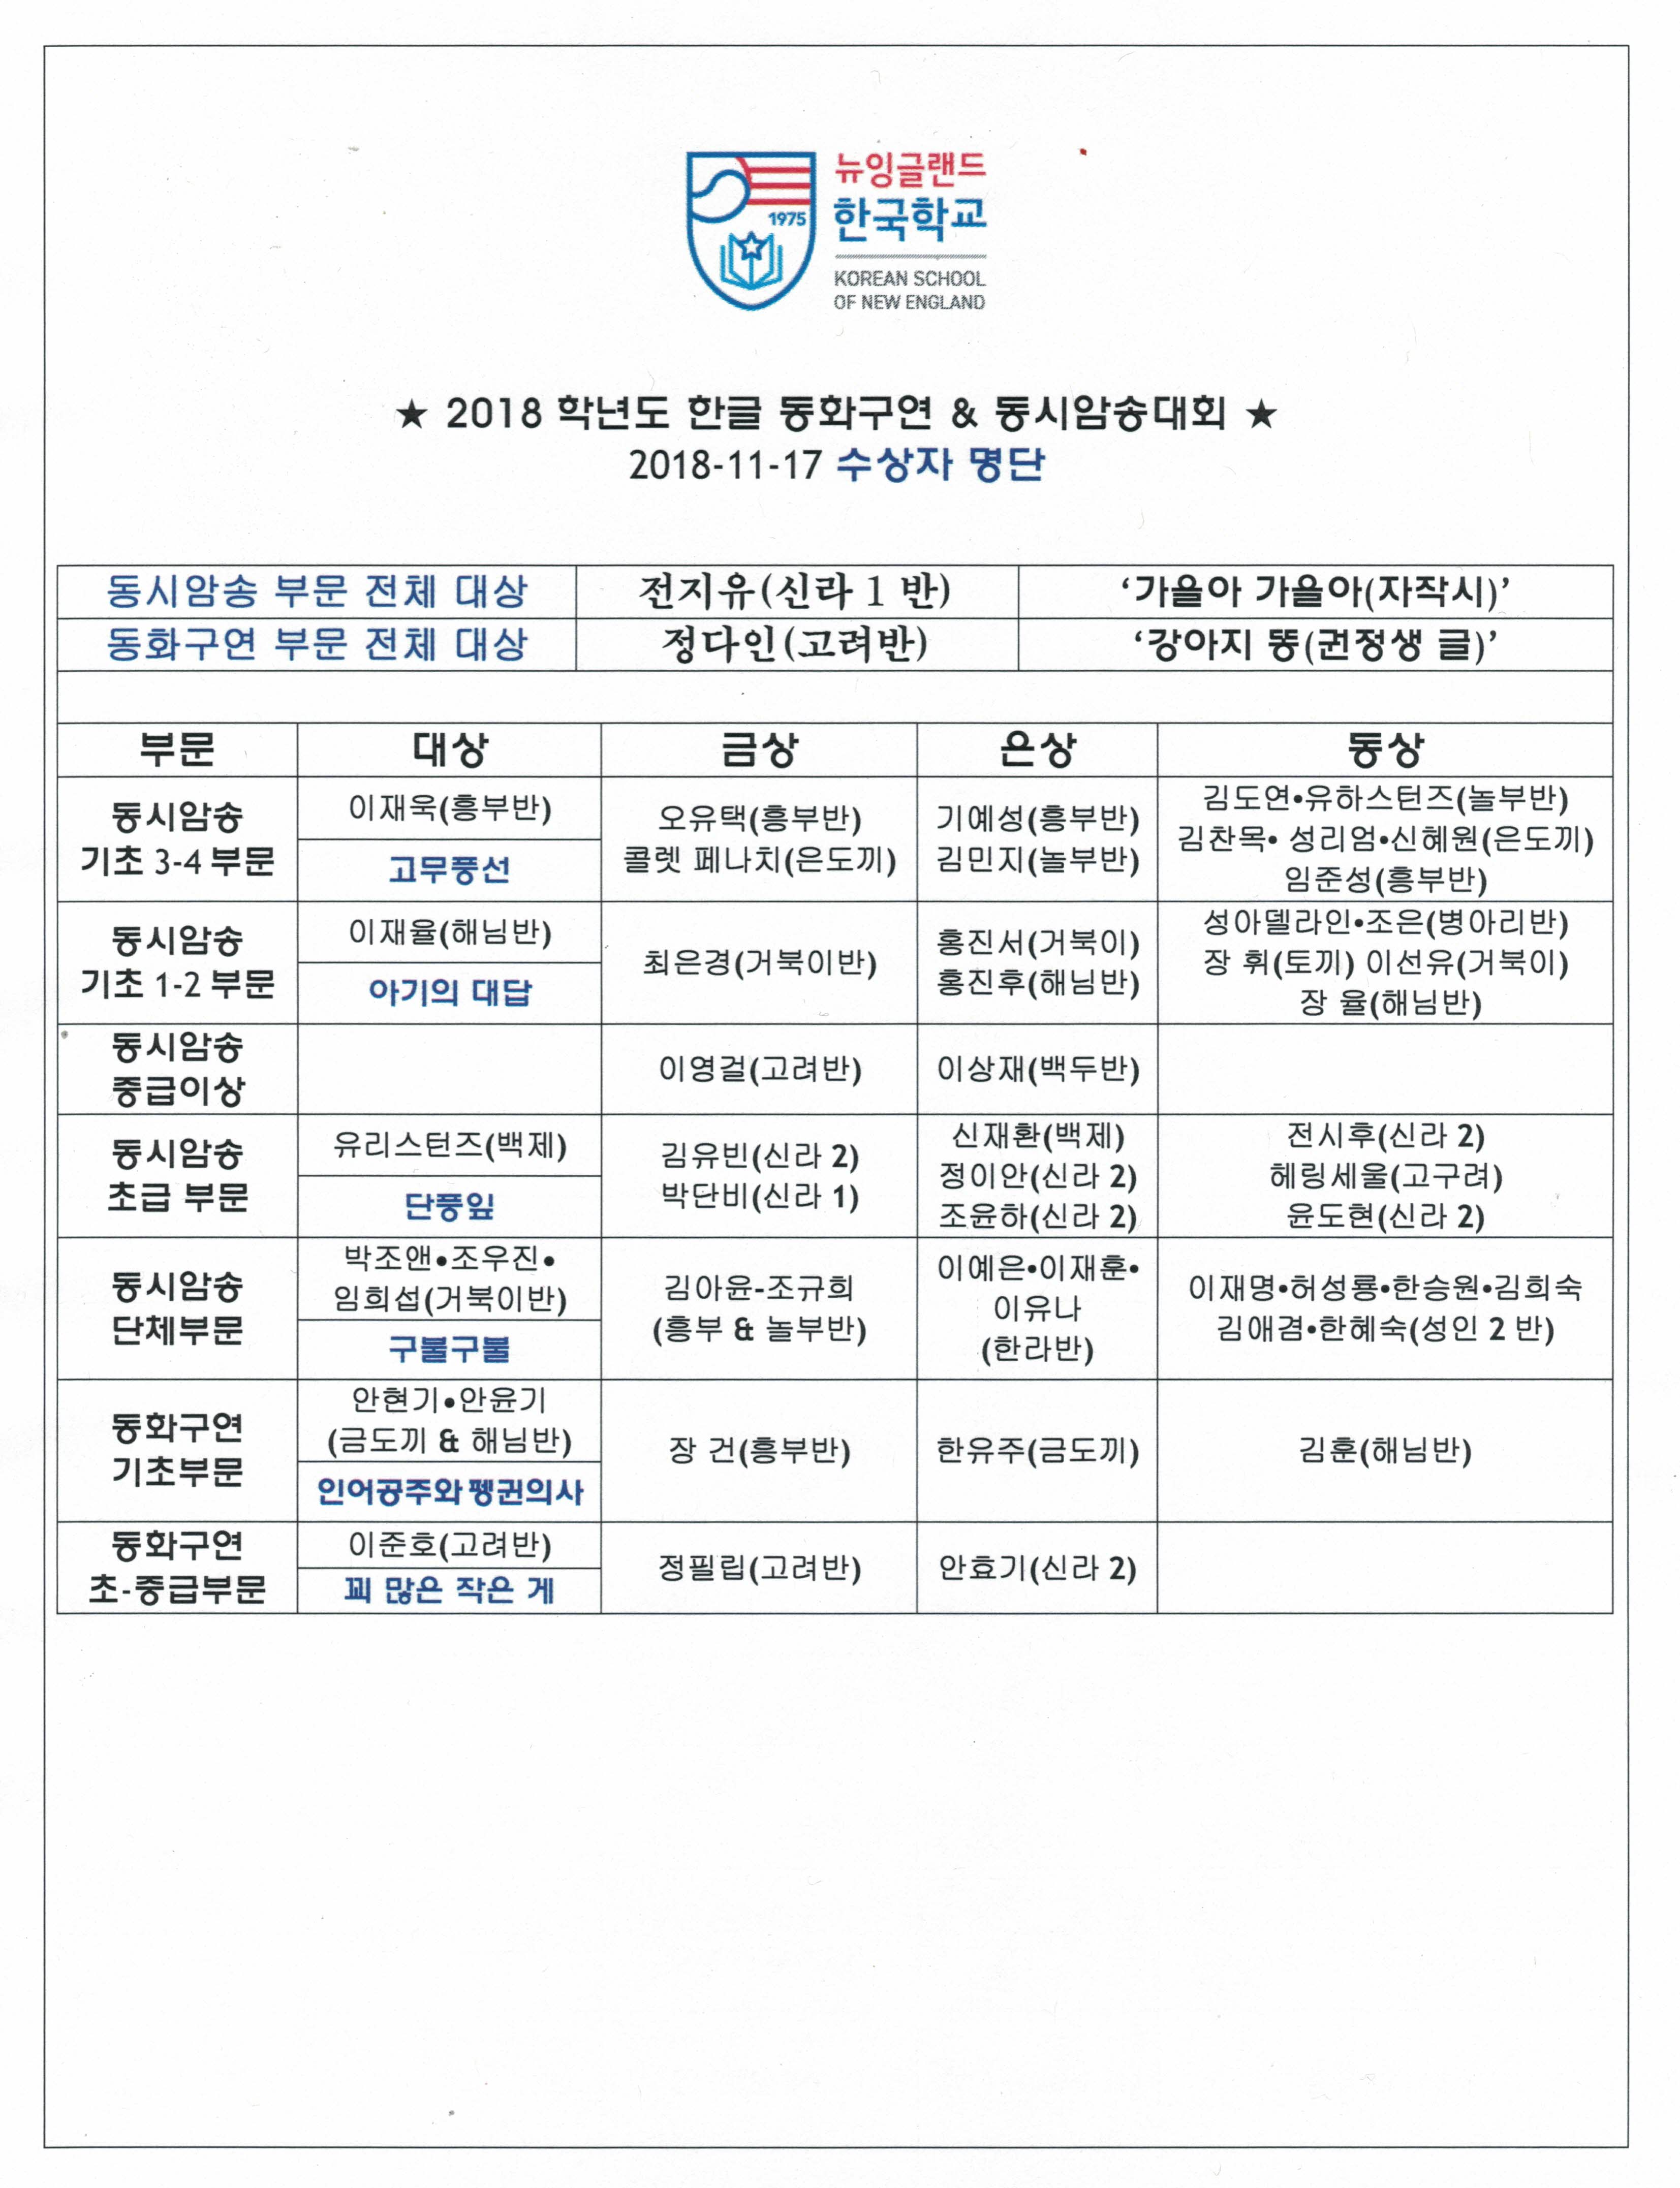 2018-11-17 동화구연-동시암송대회 수상자 명단.jpg